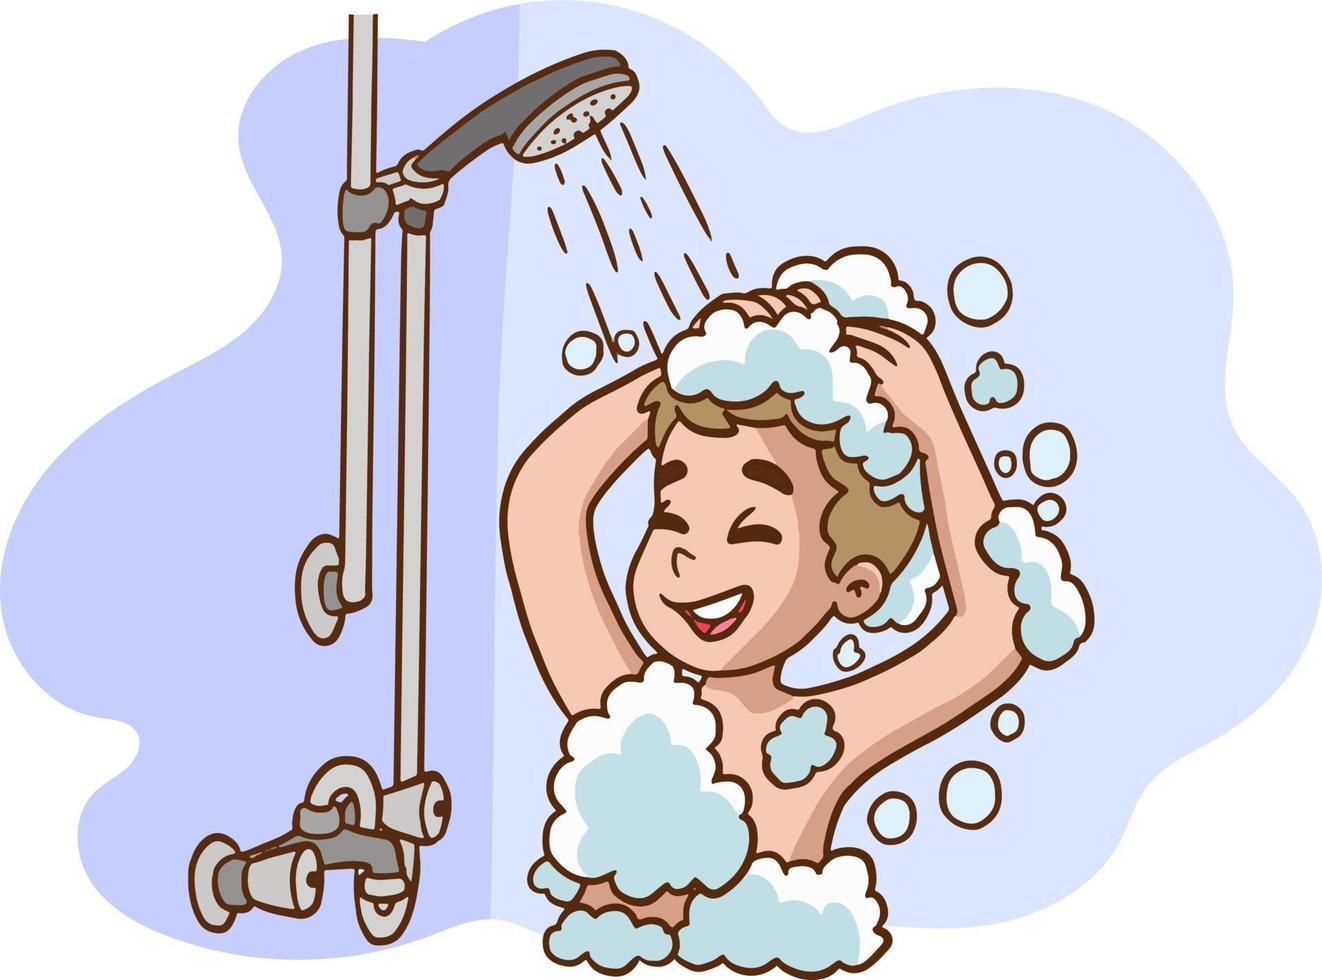 linda chico tomando un baño.pequeño niño chico personaje tomar un ducha. diario rutina. baño interior antecedentes. vector dibujos animados ilustración.